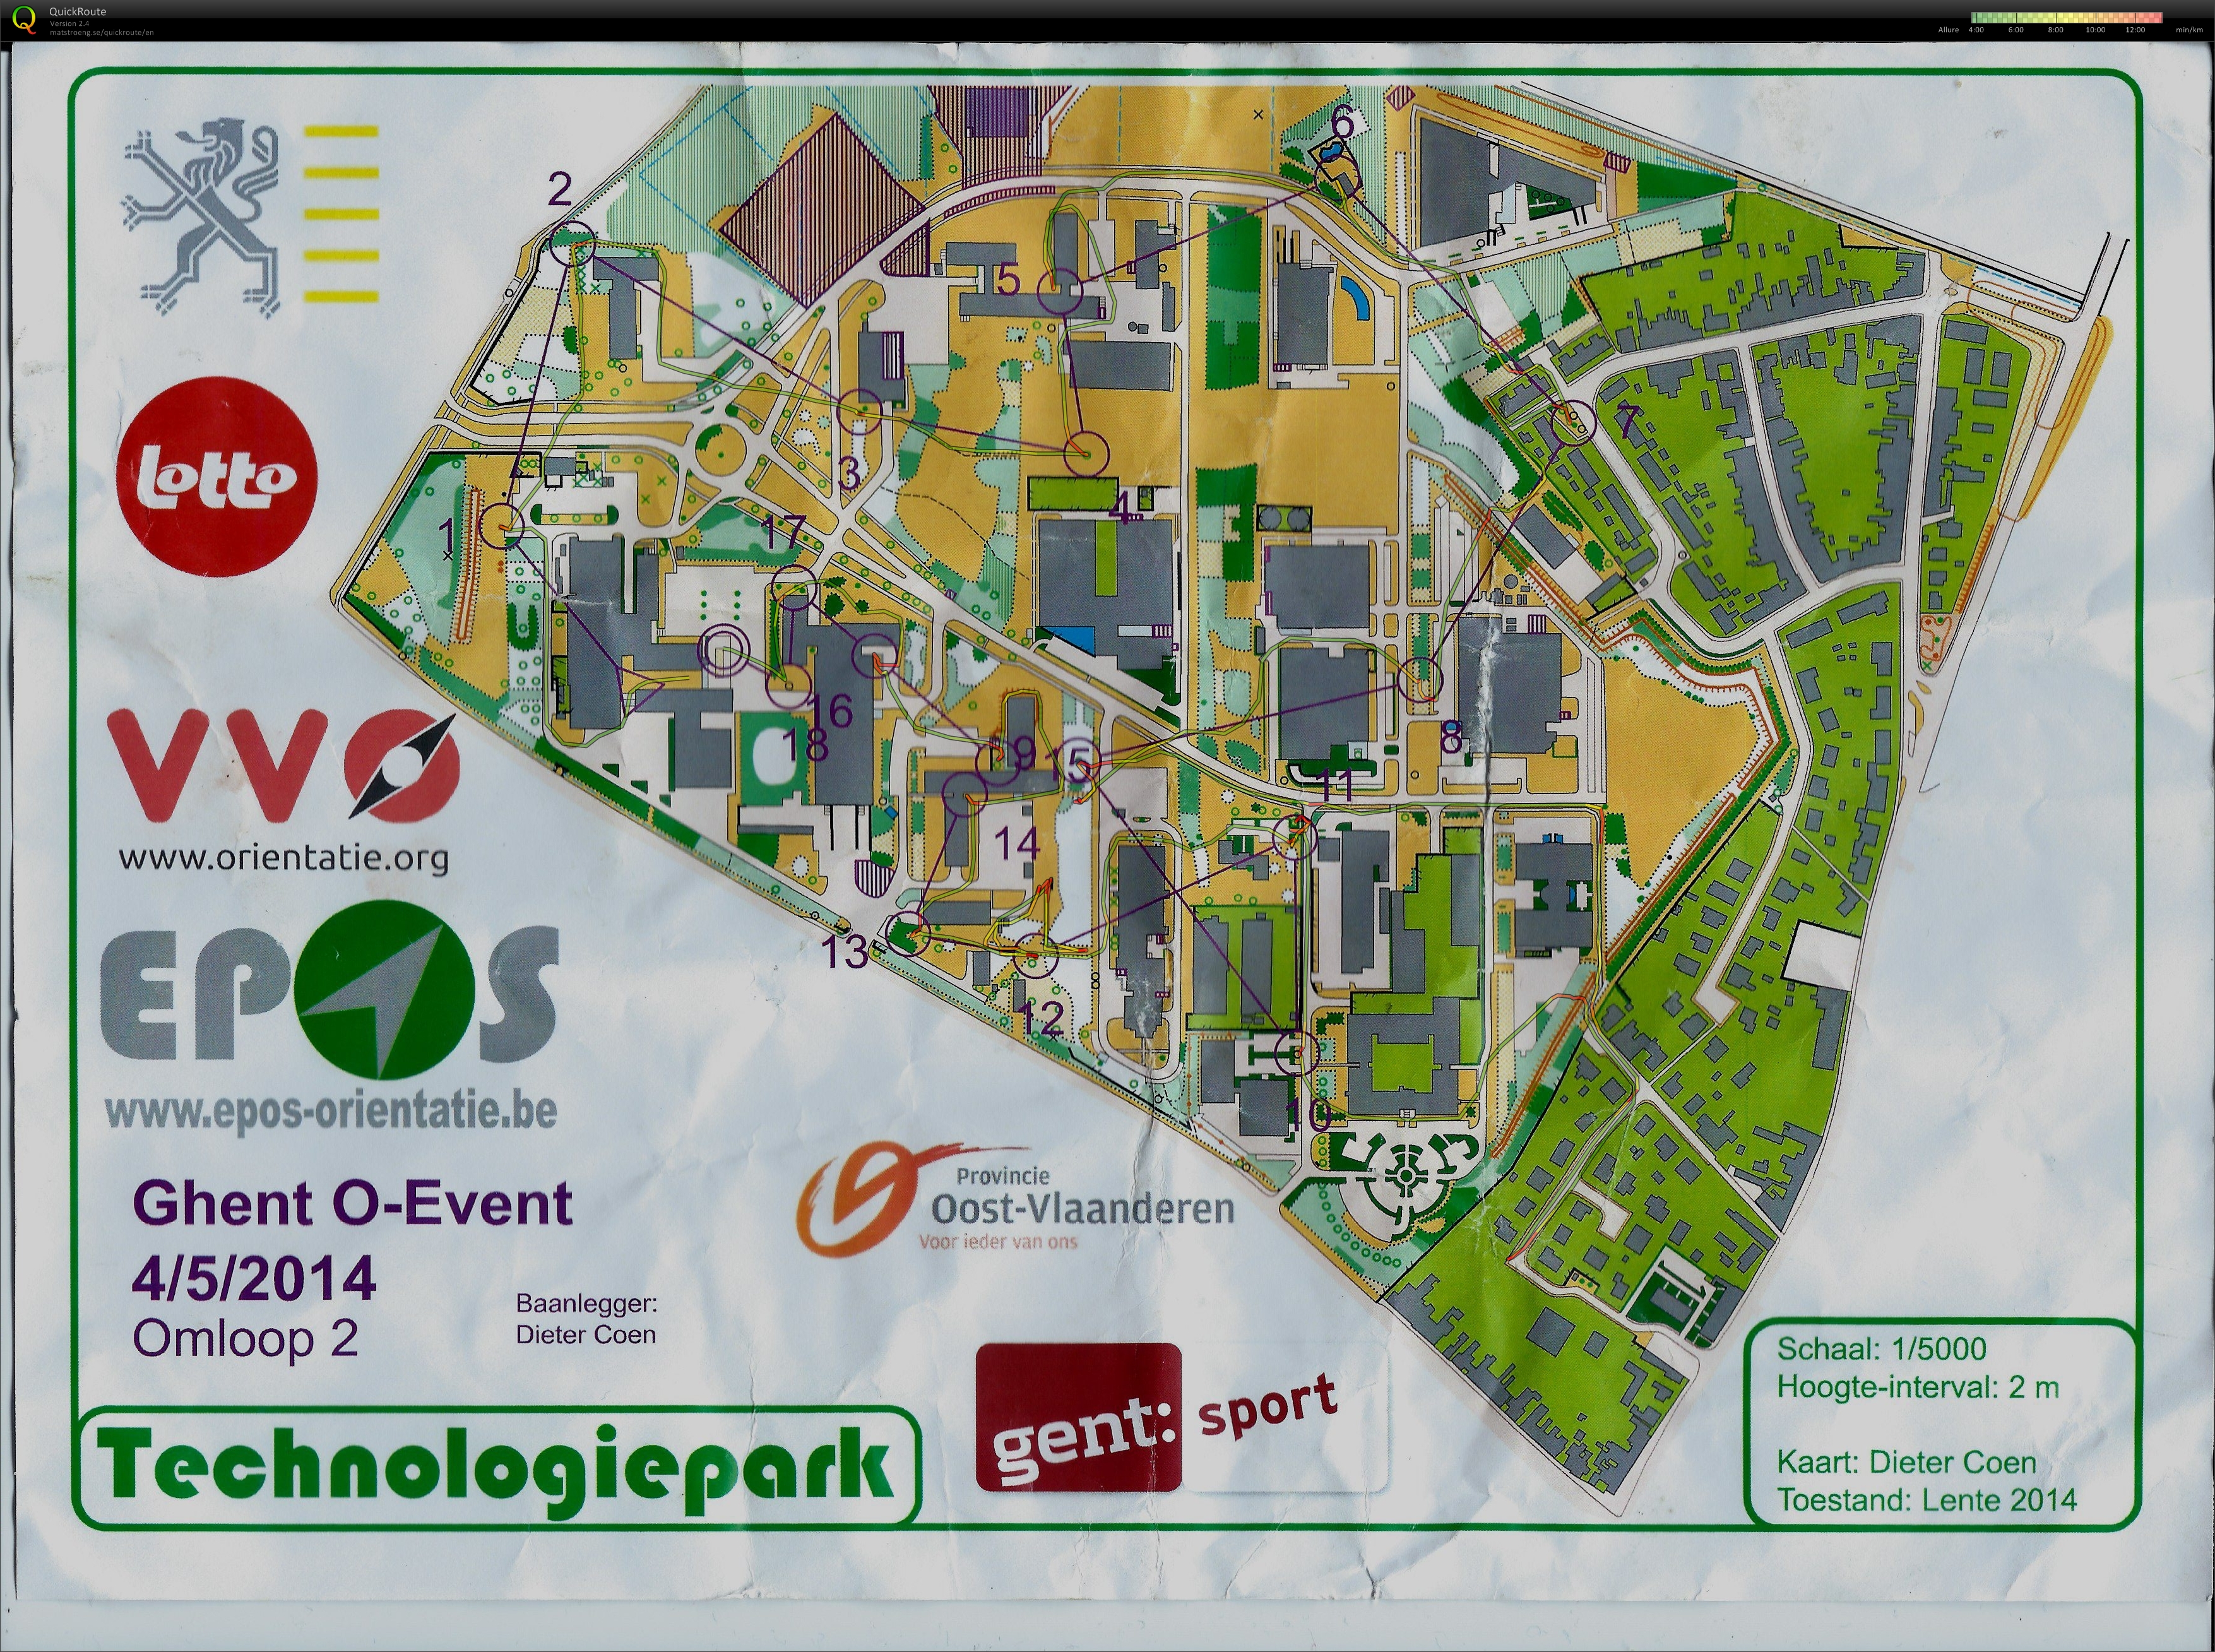 Technologiepark (04/05/2014)